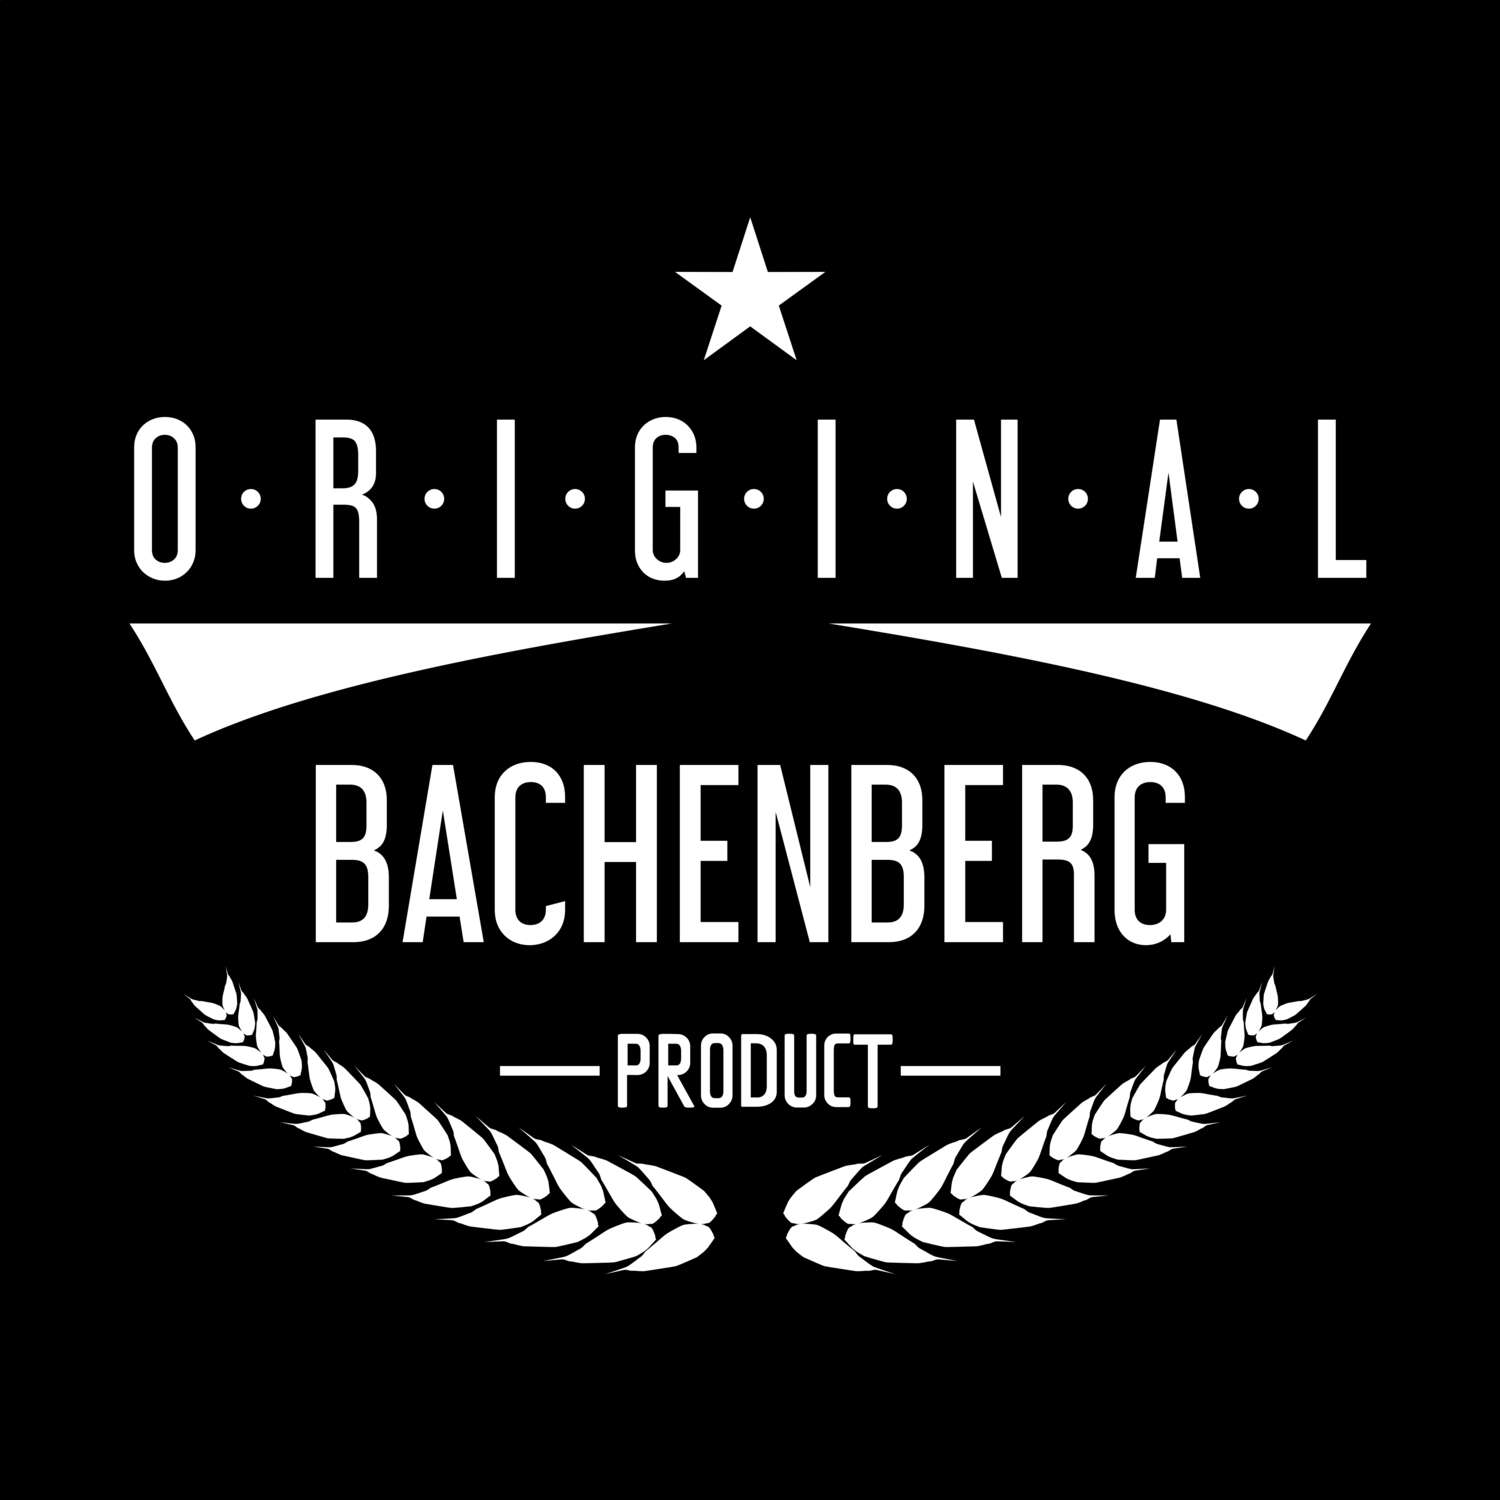 Bachenberg T-Shirt »Original Product«